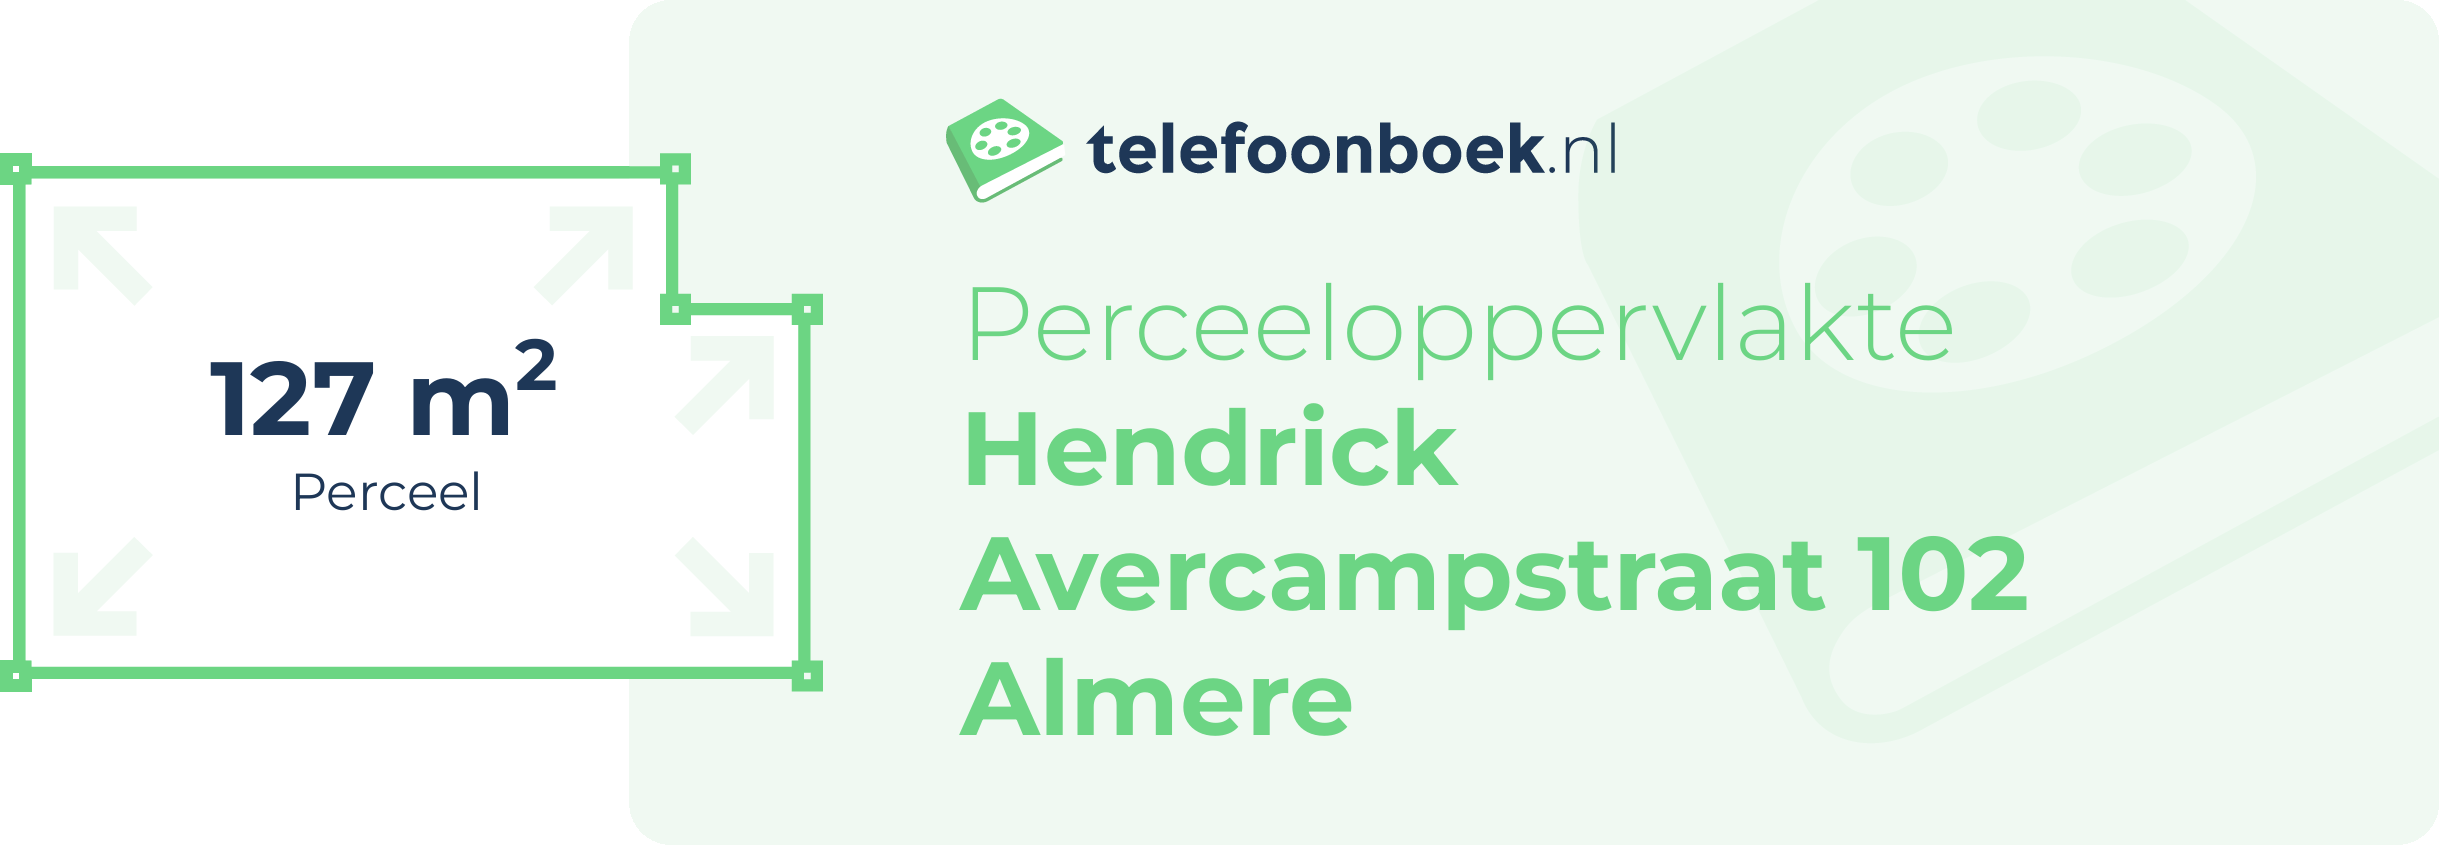 Perceeloppervlakte Hendrick Avercampstraat 102 Almere